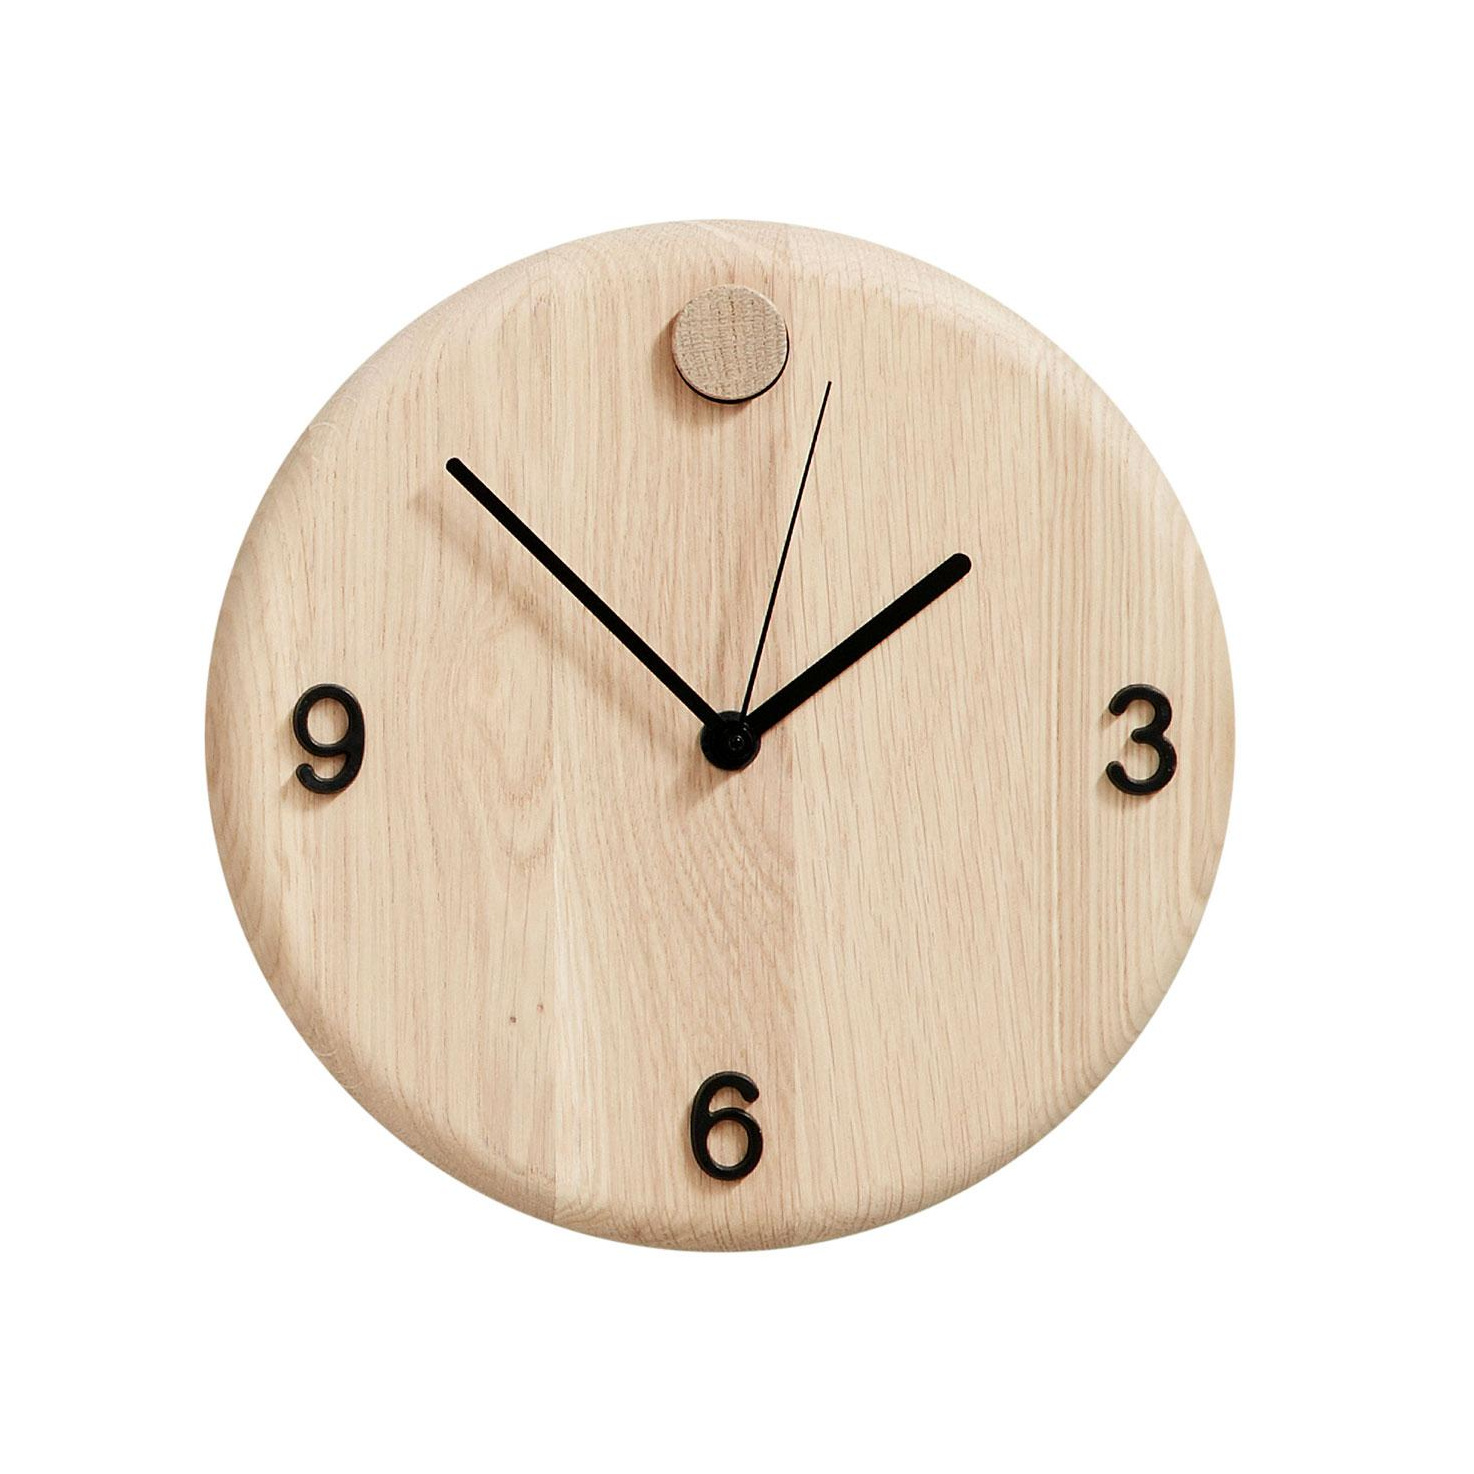 Andersen Furniture - Wood Time Wanduhr Ø22cm - eiche weiß/Zahlen (3,6,9) austauschbar/Zahlen in grün, orange und schwarz von Andersen Furniture